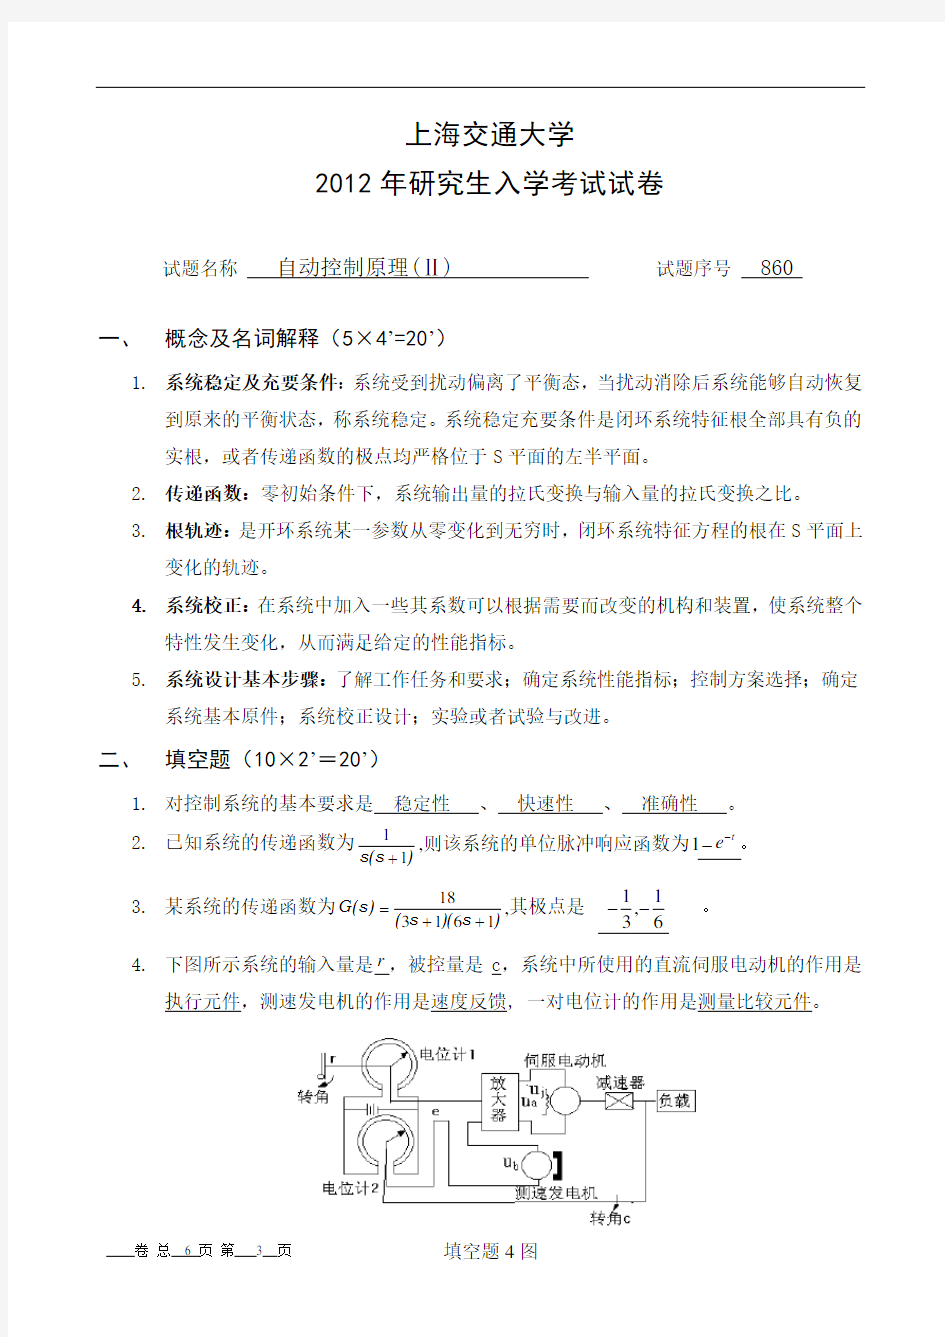 上海交通大学2012年自控考研试卷